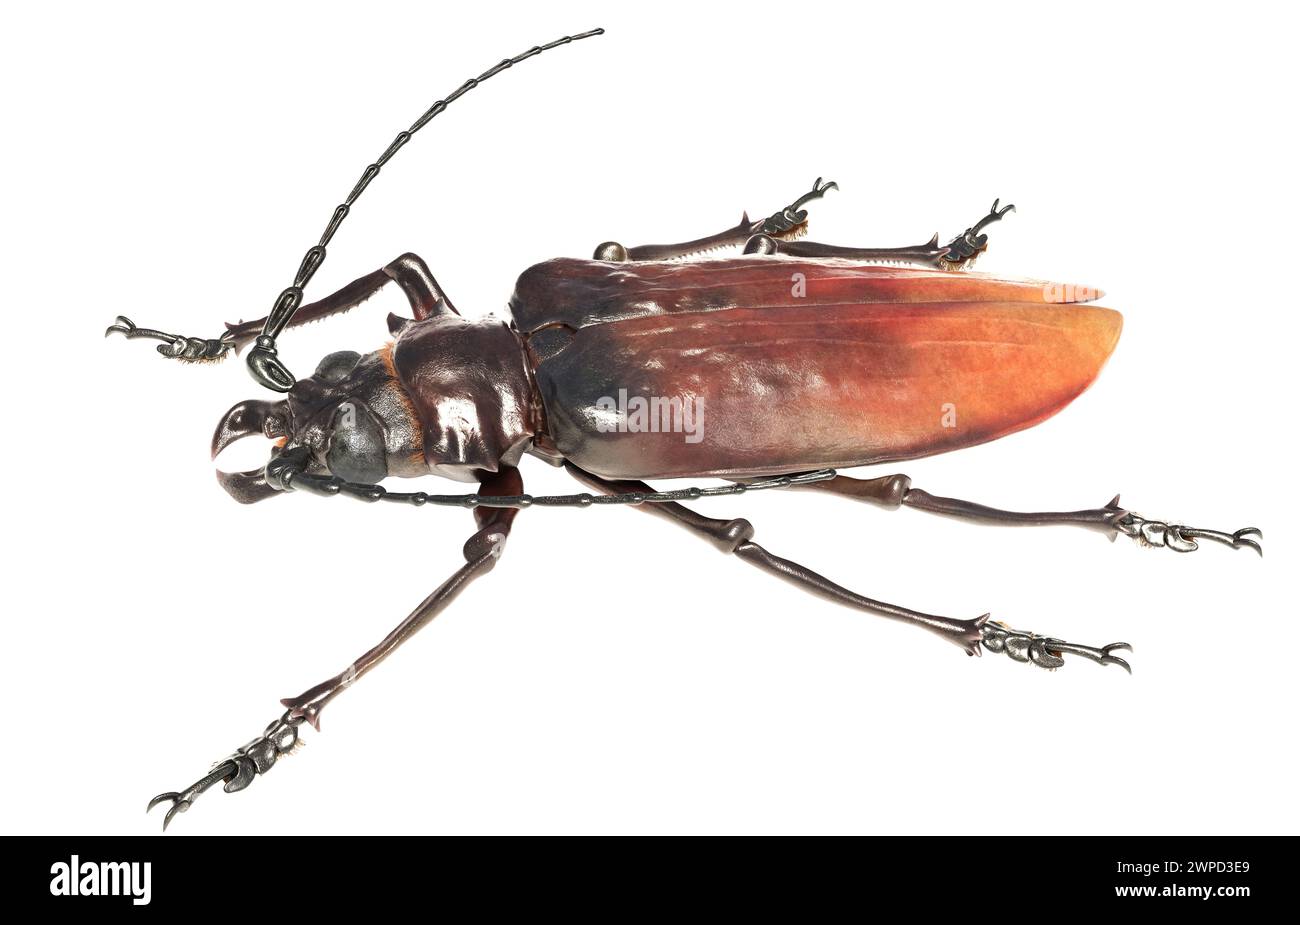 Illustration eines Rekordexemplars der südamerikanischen Käferart Titanus giganteus, des titankäfers. Vielleicht das größte Insekt, das jemals aufgezeichnet wurde. Stockfoto